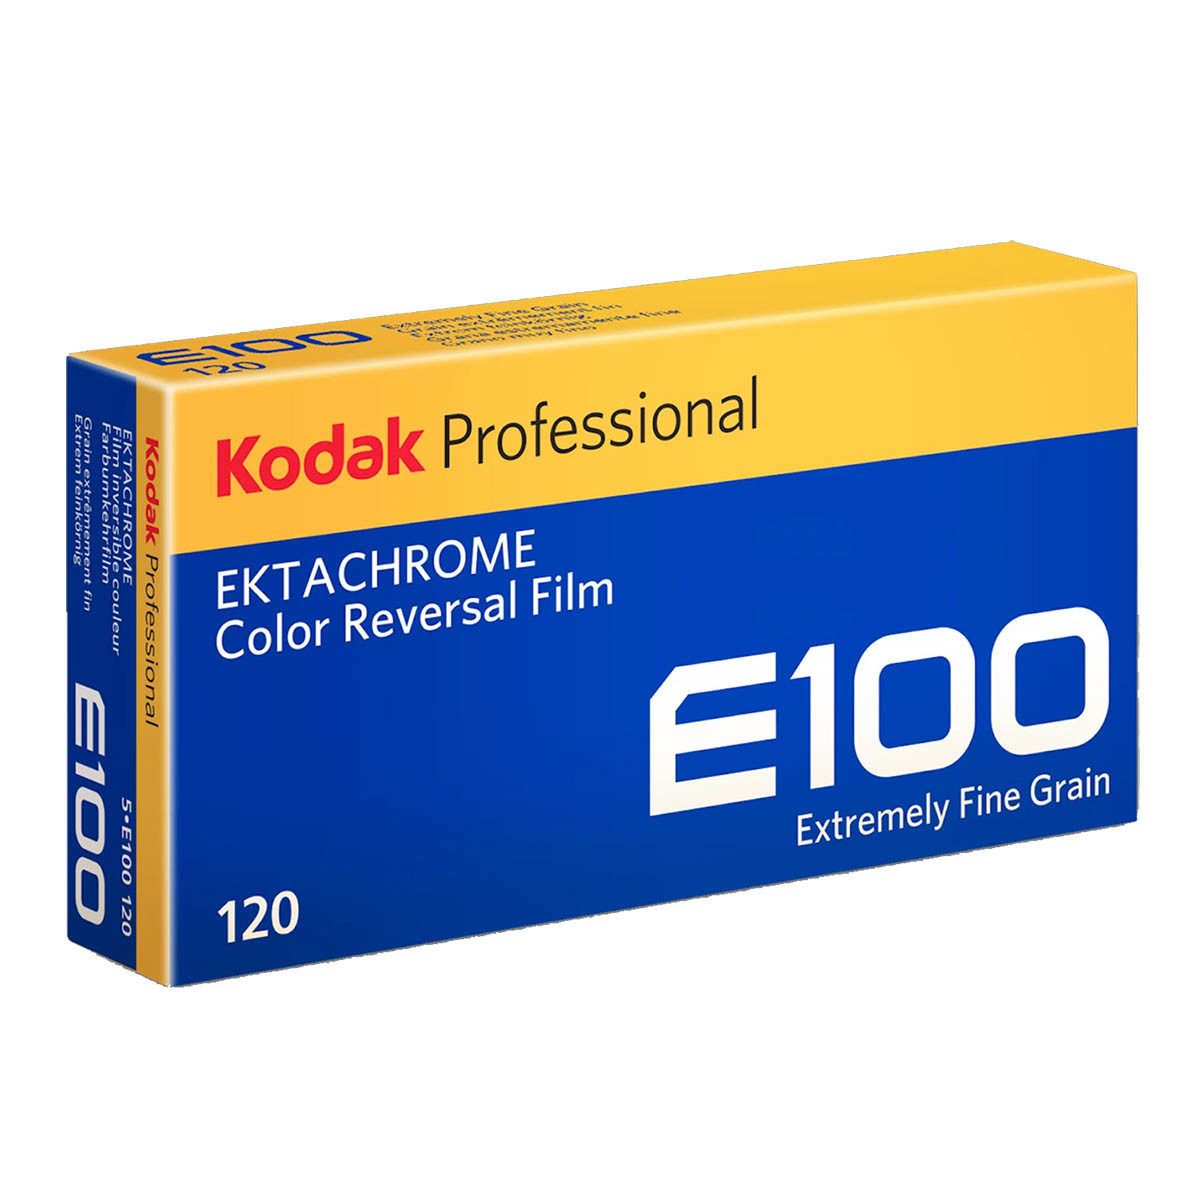 Kodak Ektachrome E100 120 5-pak